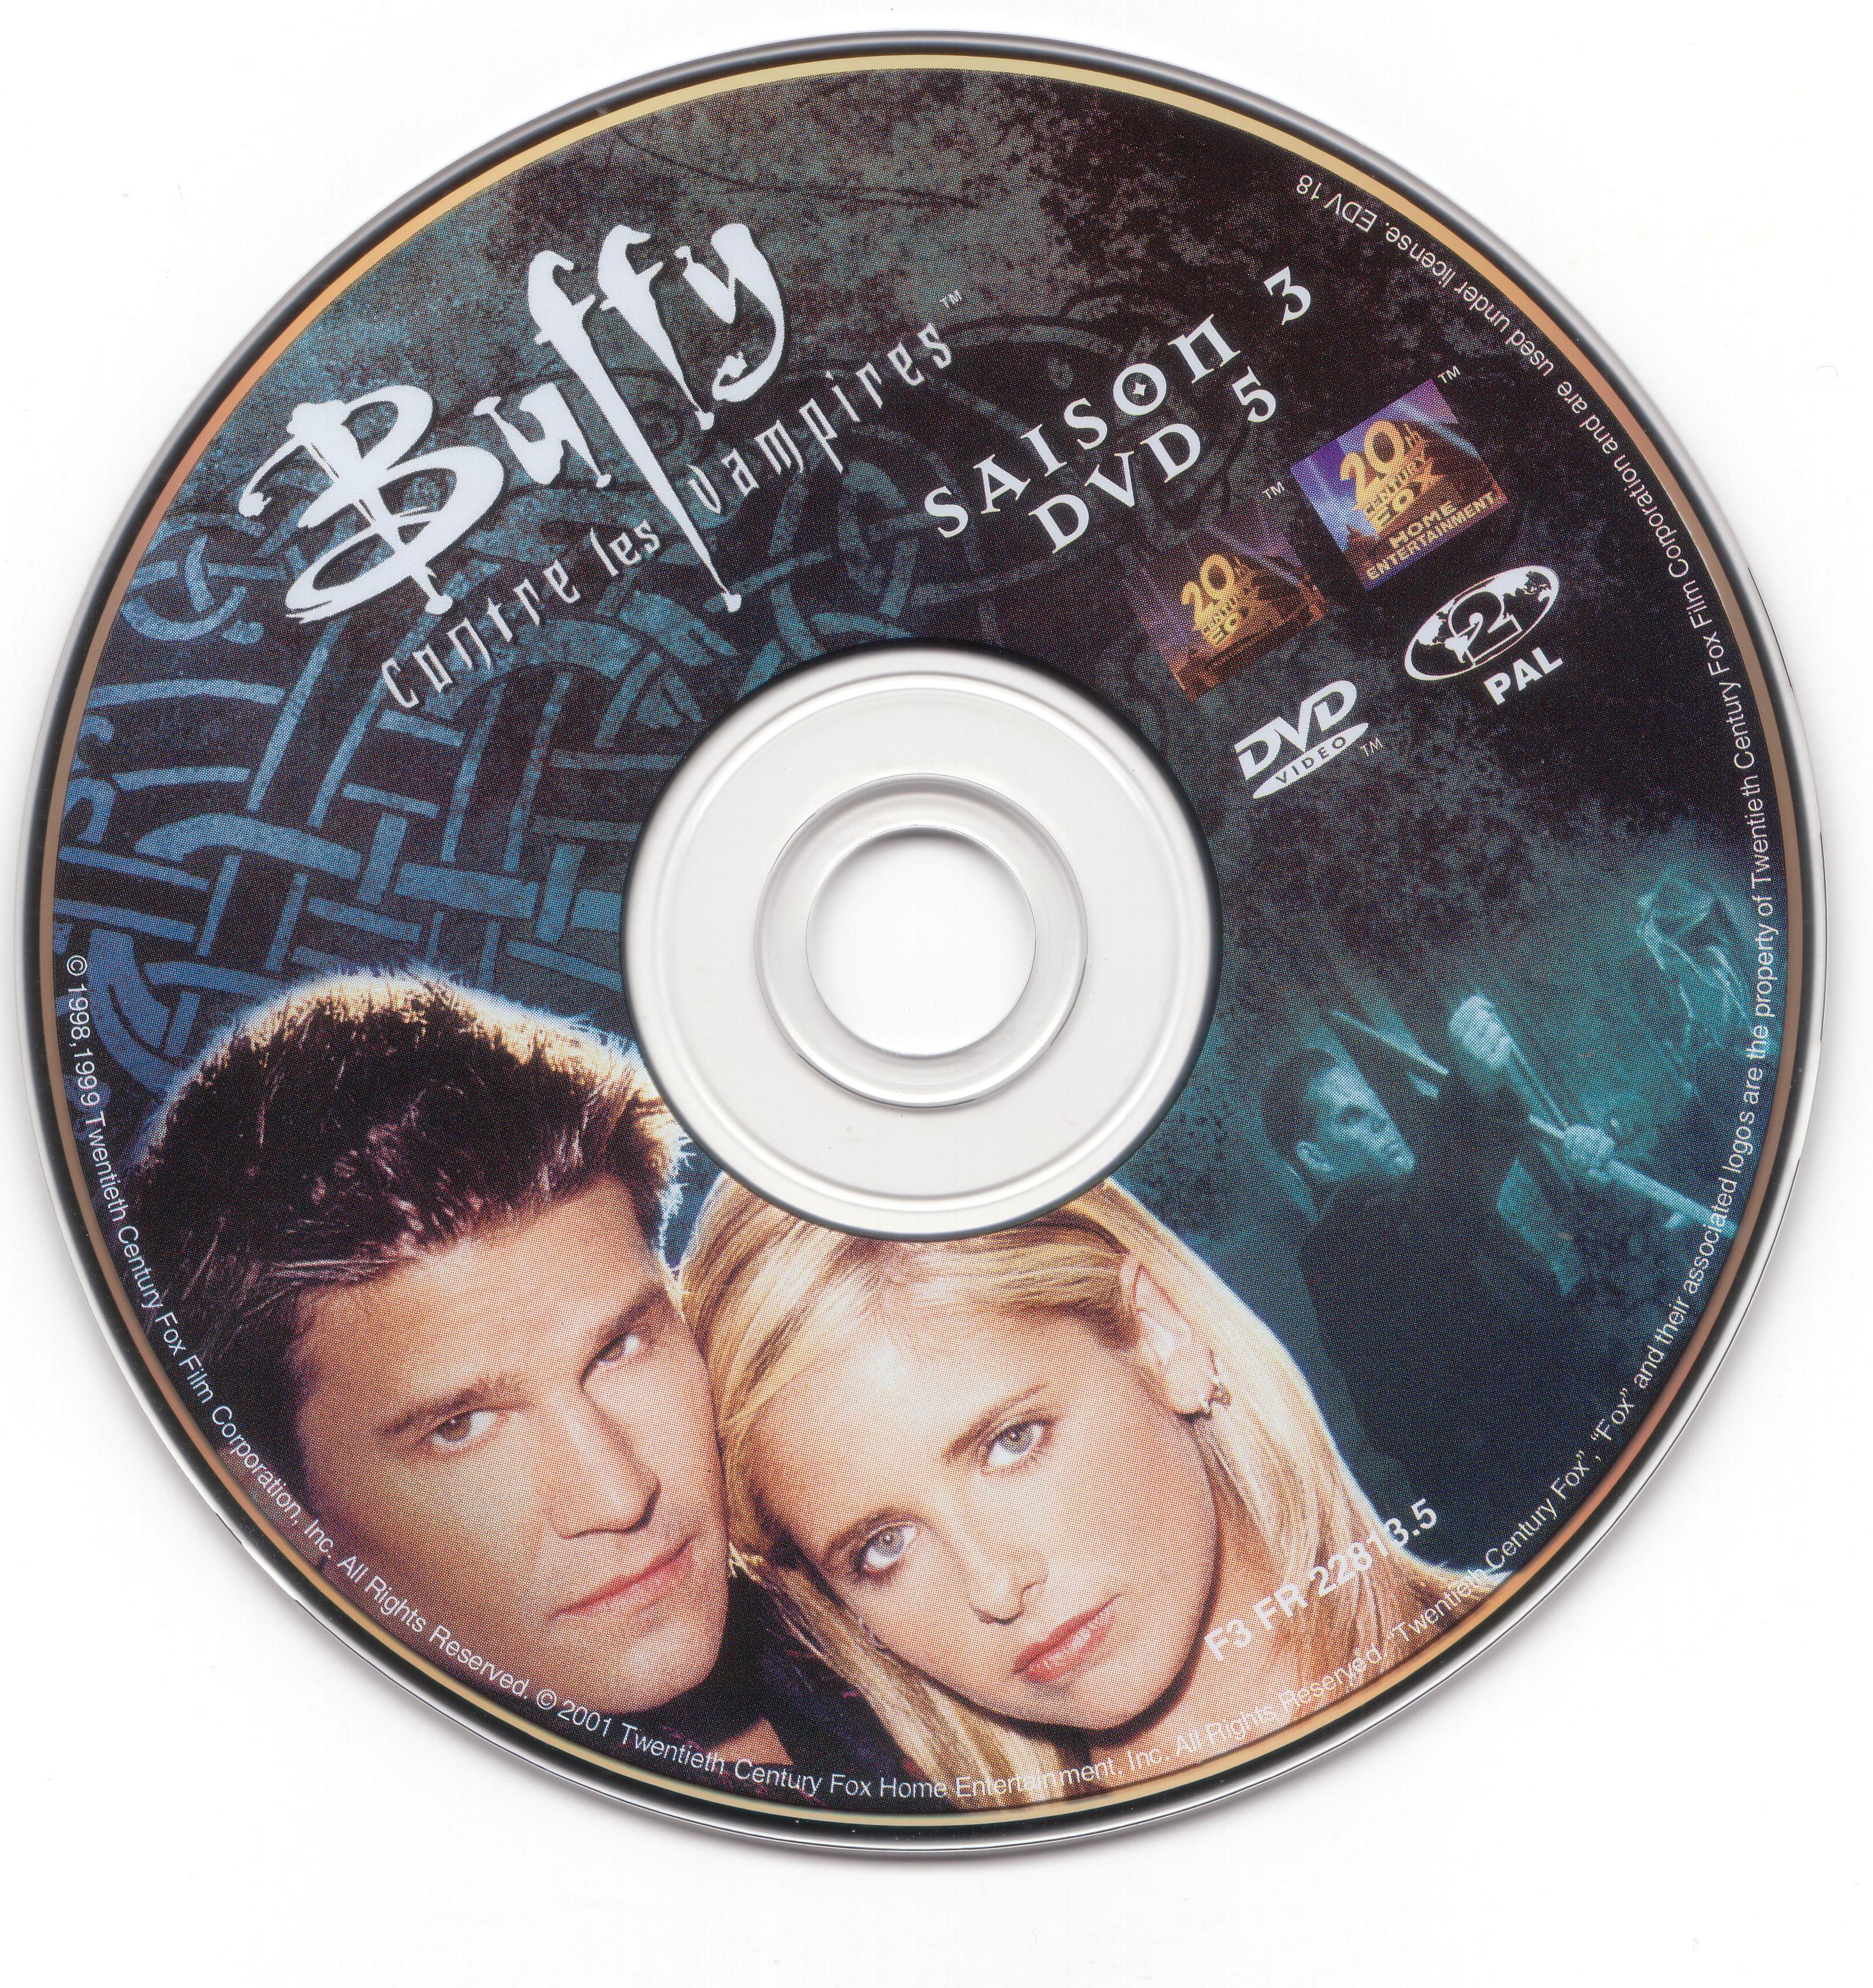 Buffy contre les vampires Saison 3 DVD 5